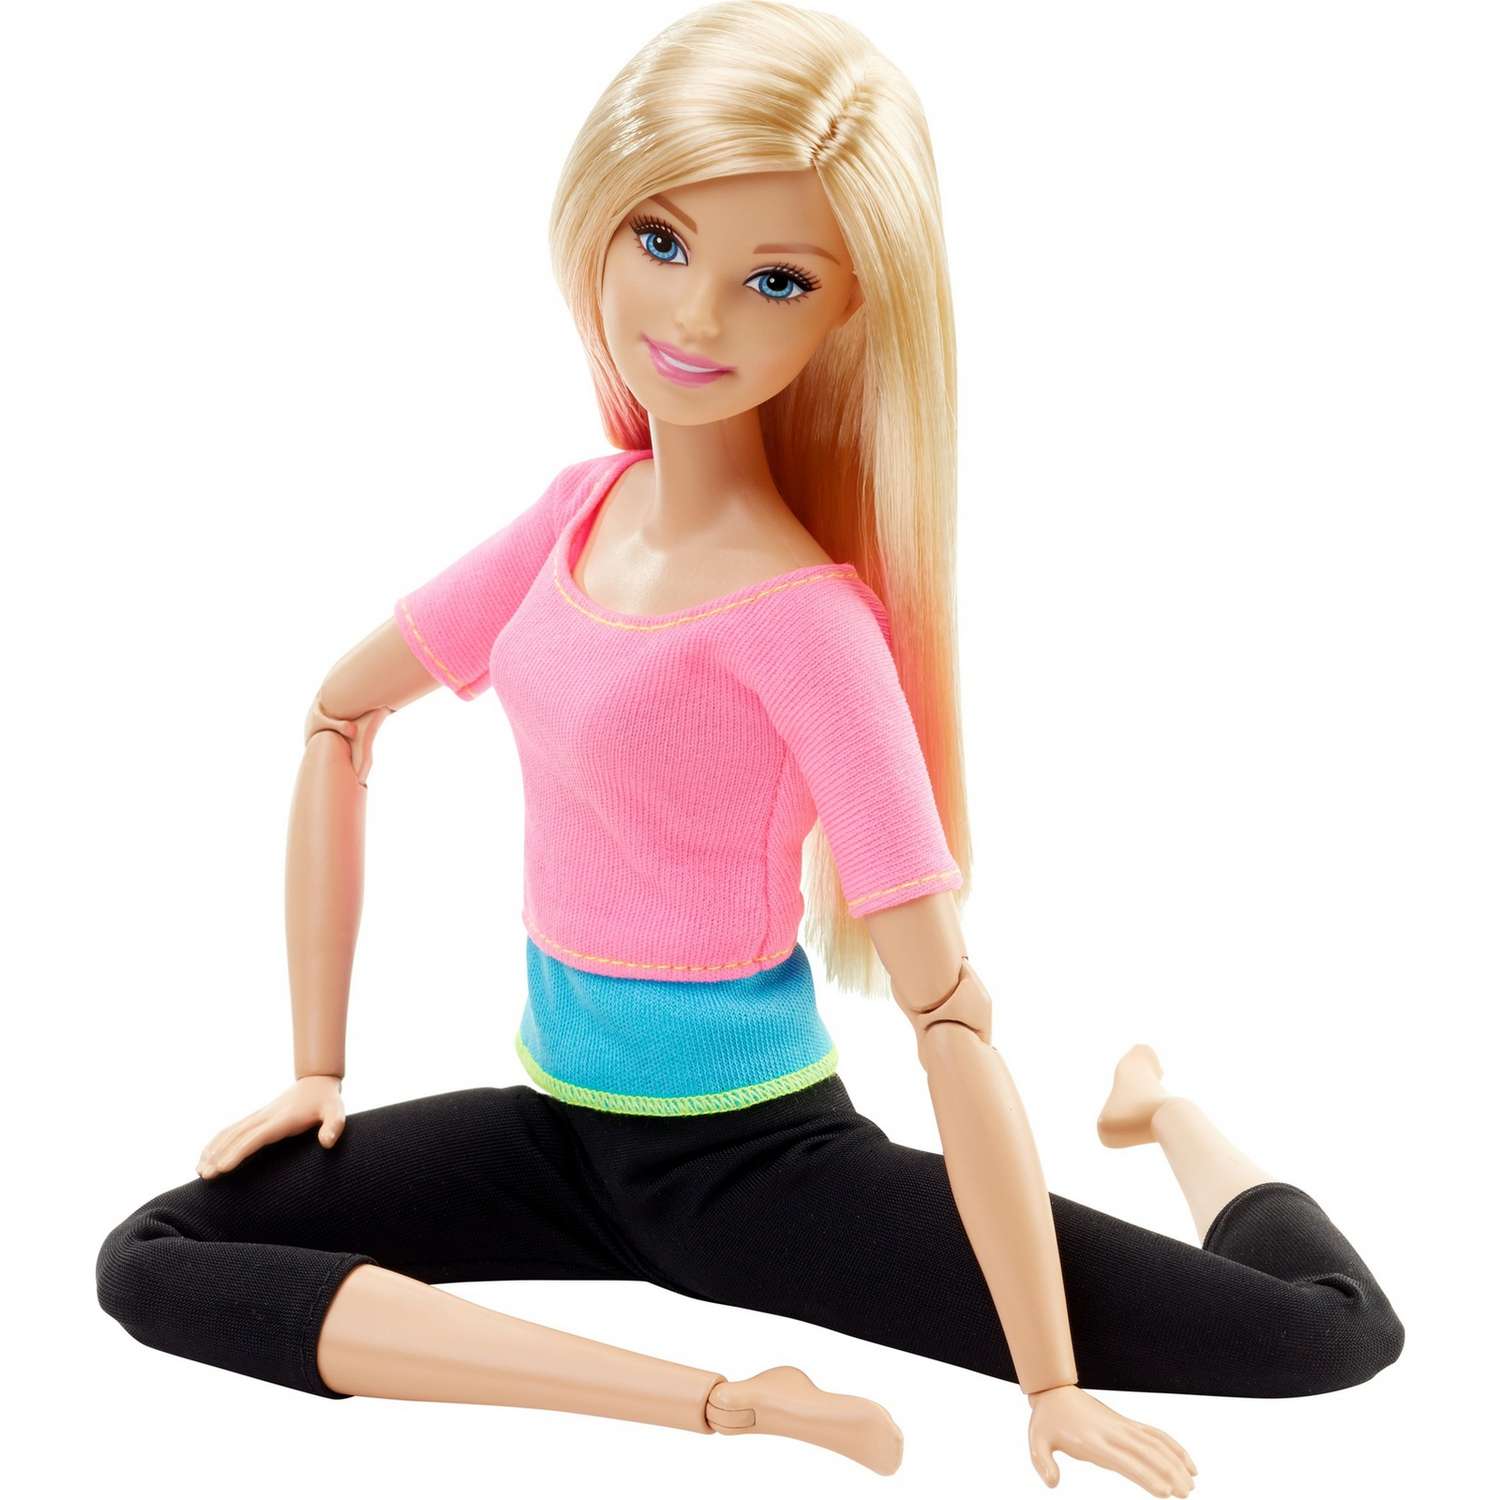 Кукла Barbie Безграничные движения Блондинка с артикуляцией тела DHL82 DHL82 - фото 6